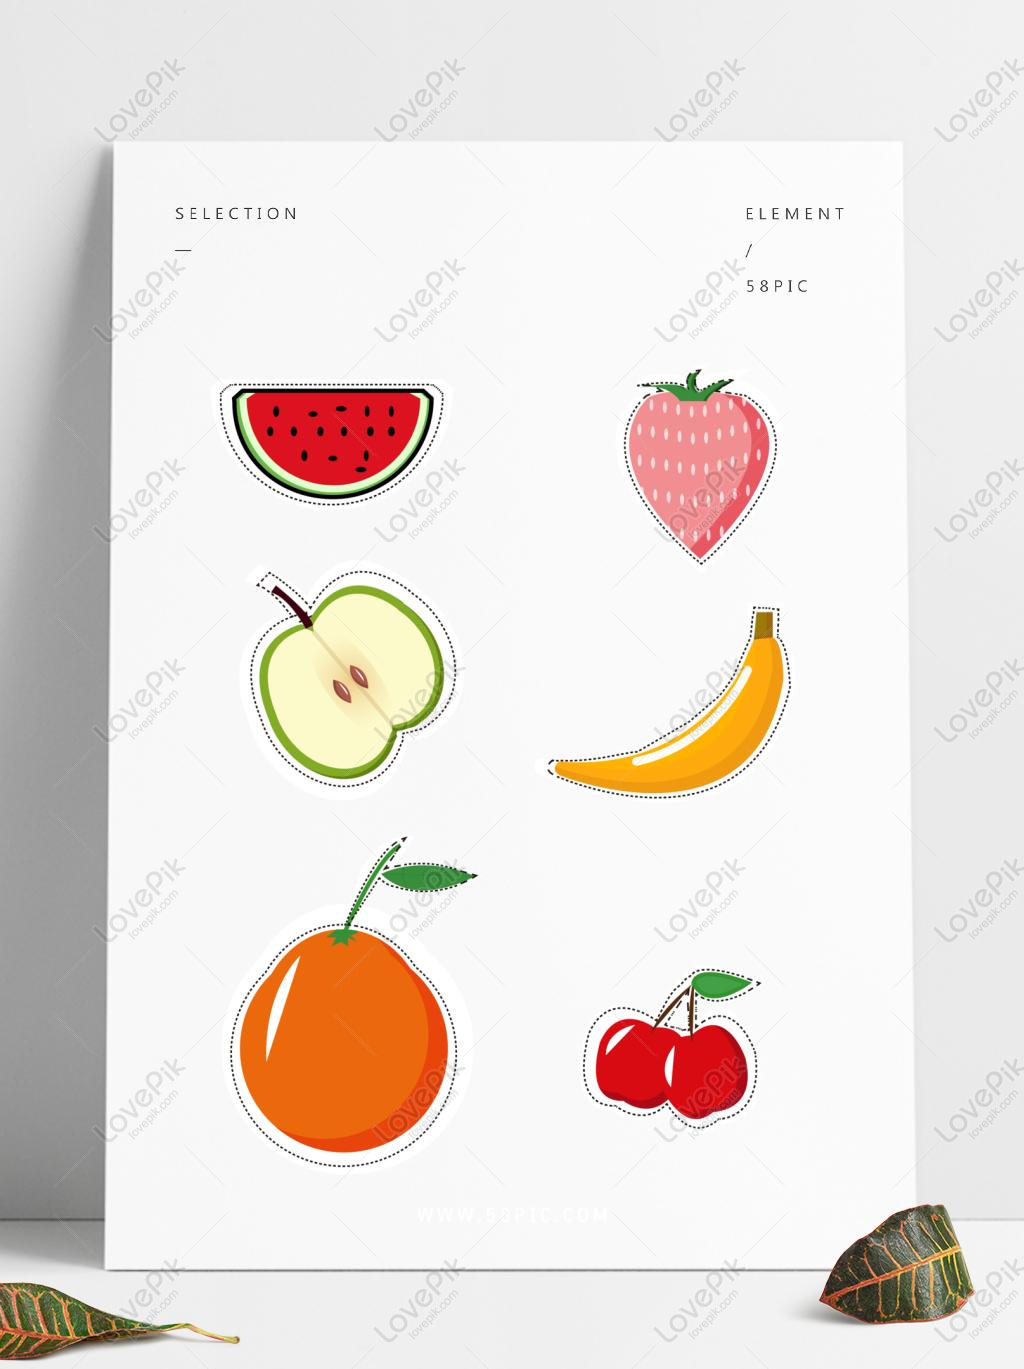 Bạn muốn tìm những sticker trái cây đáng yêu để trang trí cho các sản phẩm mỹ phẩm và thức ăn của mình? Hãy xem những sticker trái cây này. Chúng rất đáng yêu, chuẩn xác về màu sắc và hình dạng của trái cây. Bạn có thể sử dụng chúng để tăng cường tính thẩm mỹ và thu hút khách hàng của bạn.